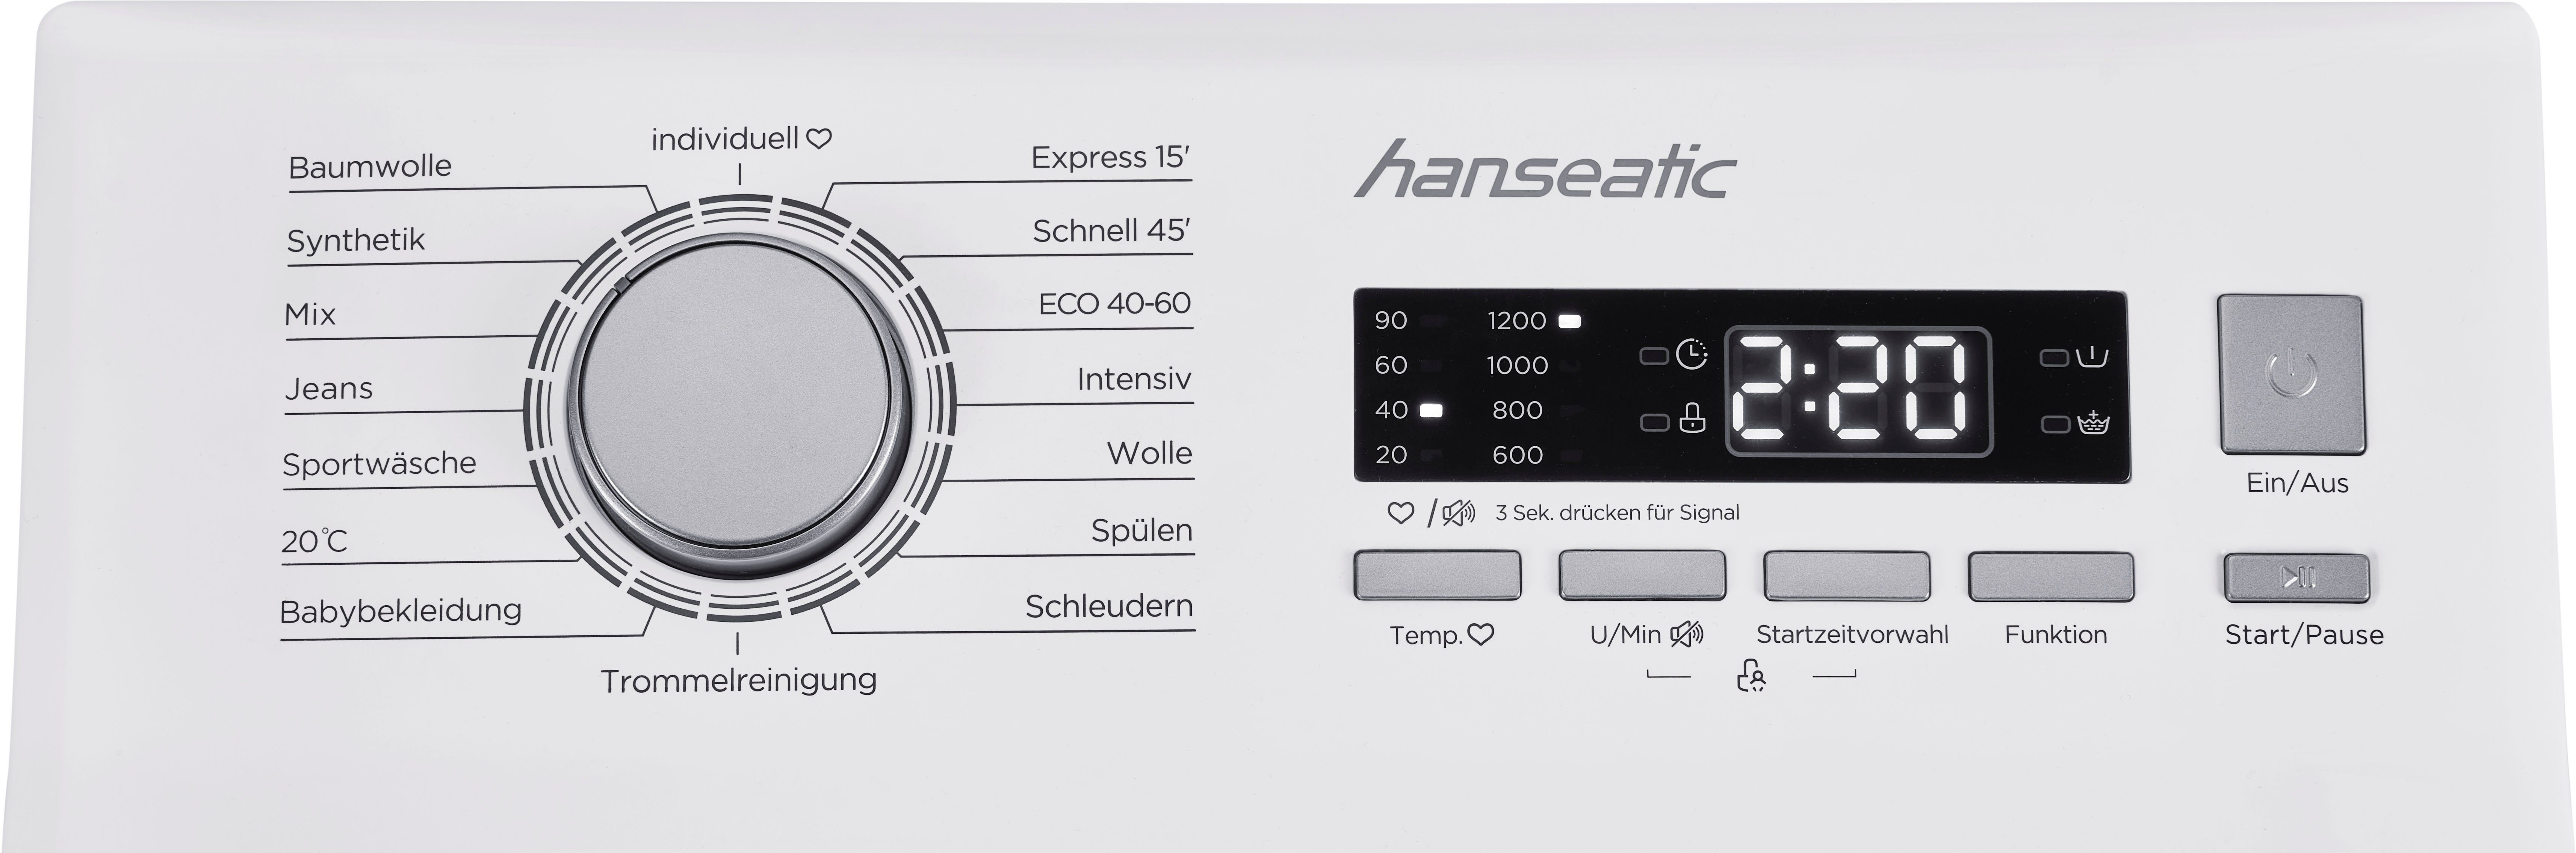 Mengenautomatik, 1200 7 kg, HTW712D, U/min, Überlaufschutzsystem Toplader Waschmaschine Hanseatic